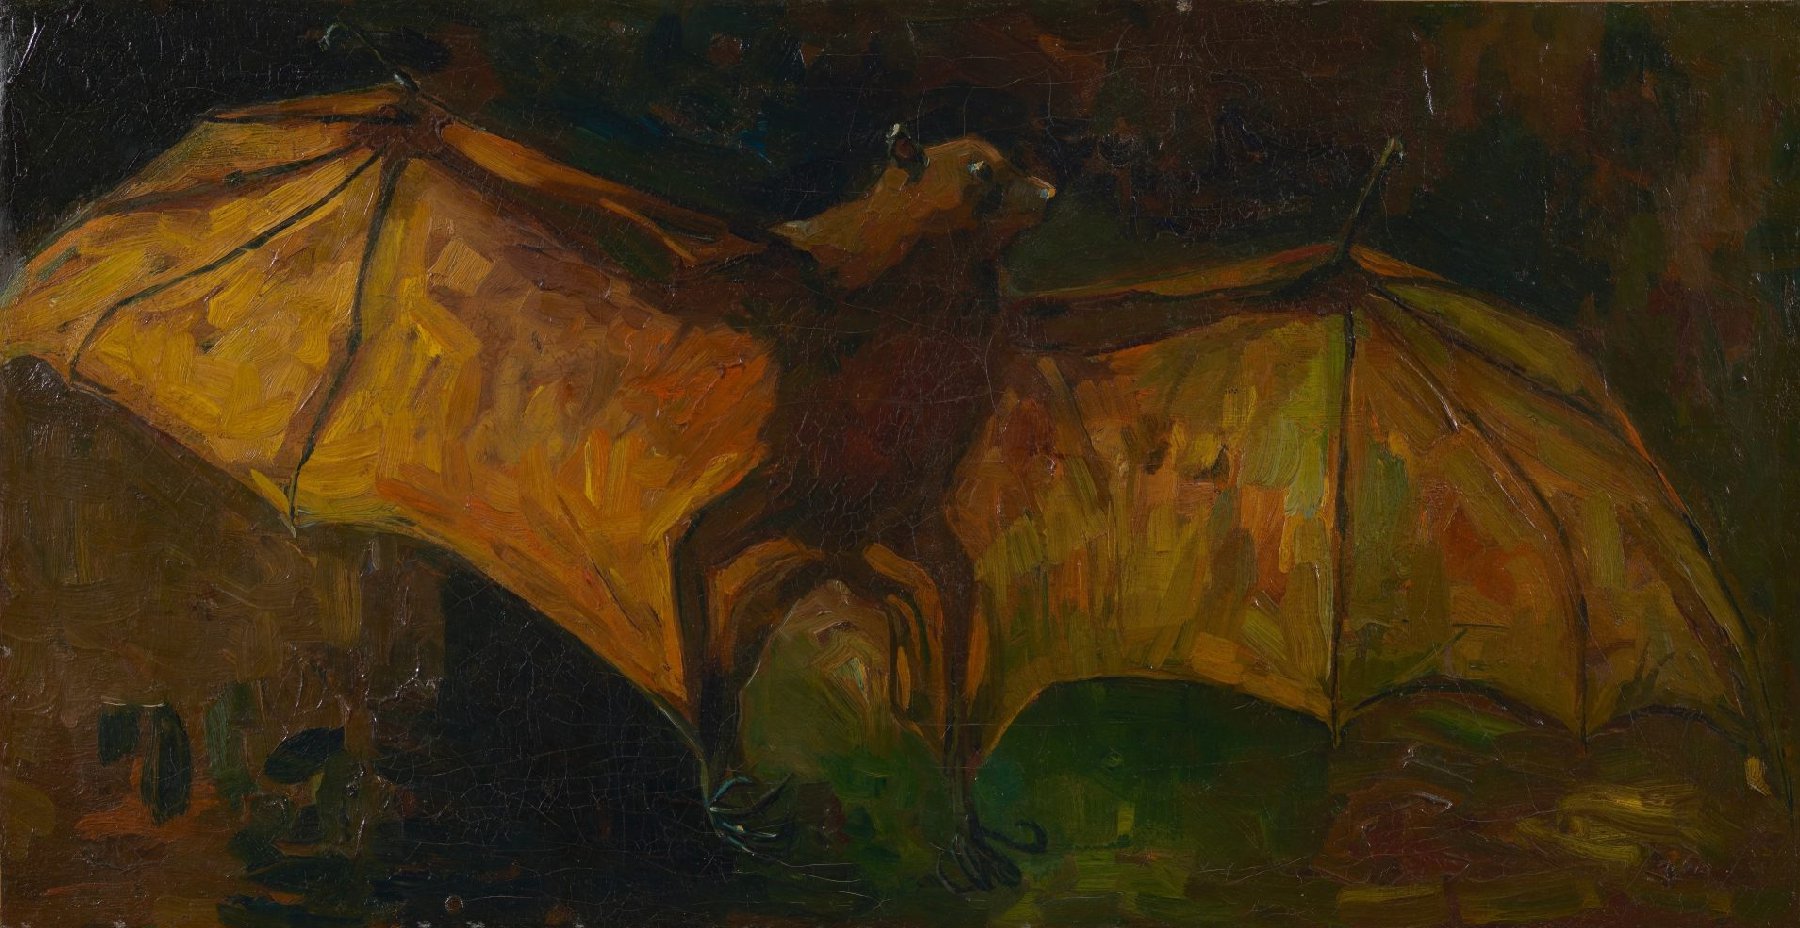 Vleerhond Vincent van Gogh (1853 - 1890), Nuenen, oktober-november 1884